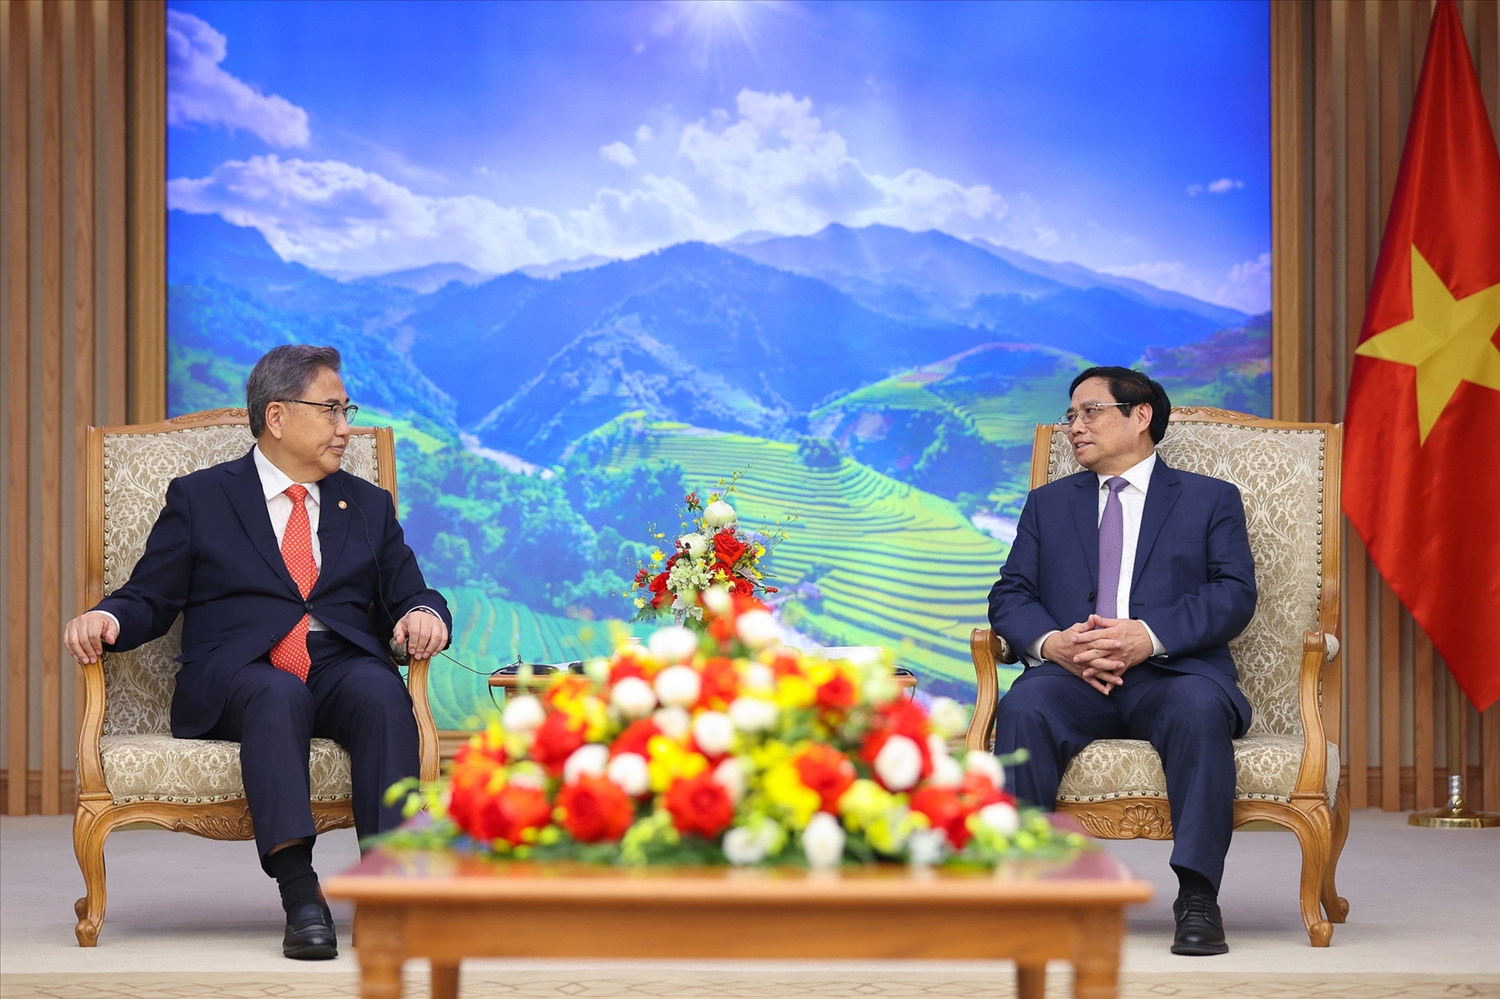 Thủ tướng Phạm Minh Chính vui mừng trước những bước phát triển mạnh mẽ của quan hệ hai nước trong 30 năm qua - Ảnh: VGP/Nhật Bắc